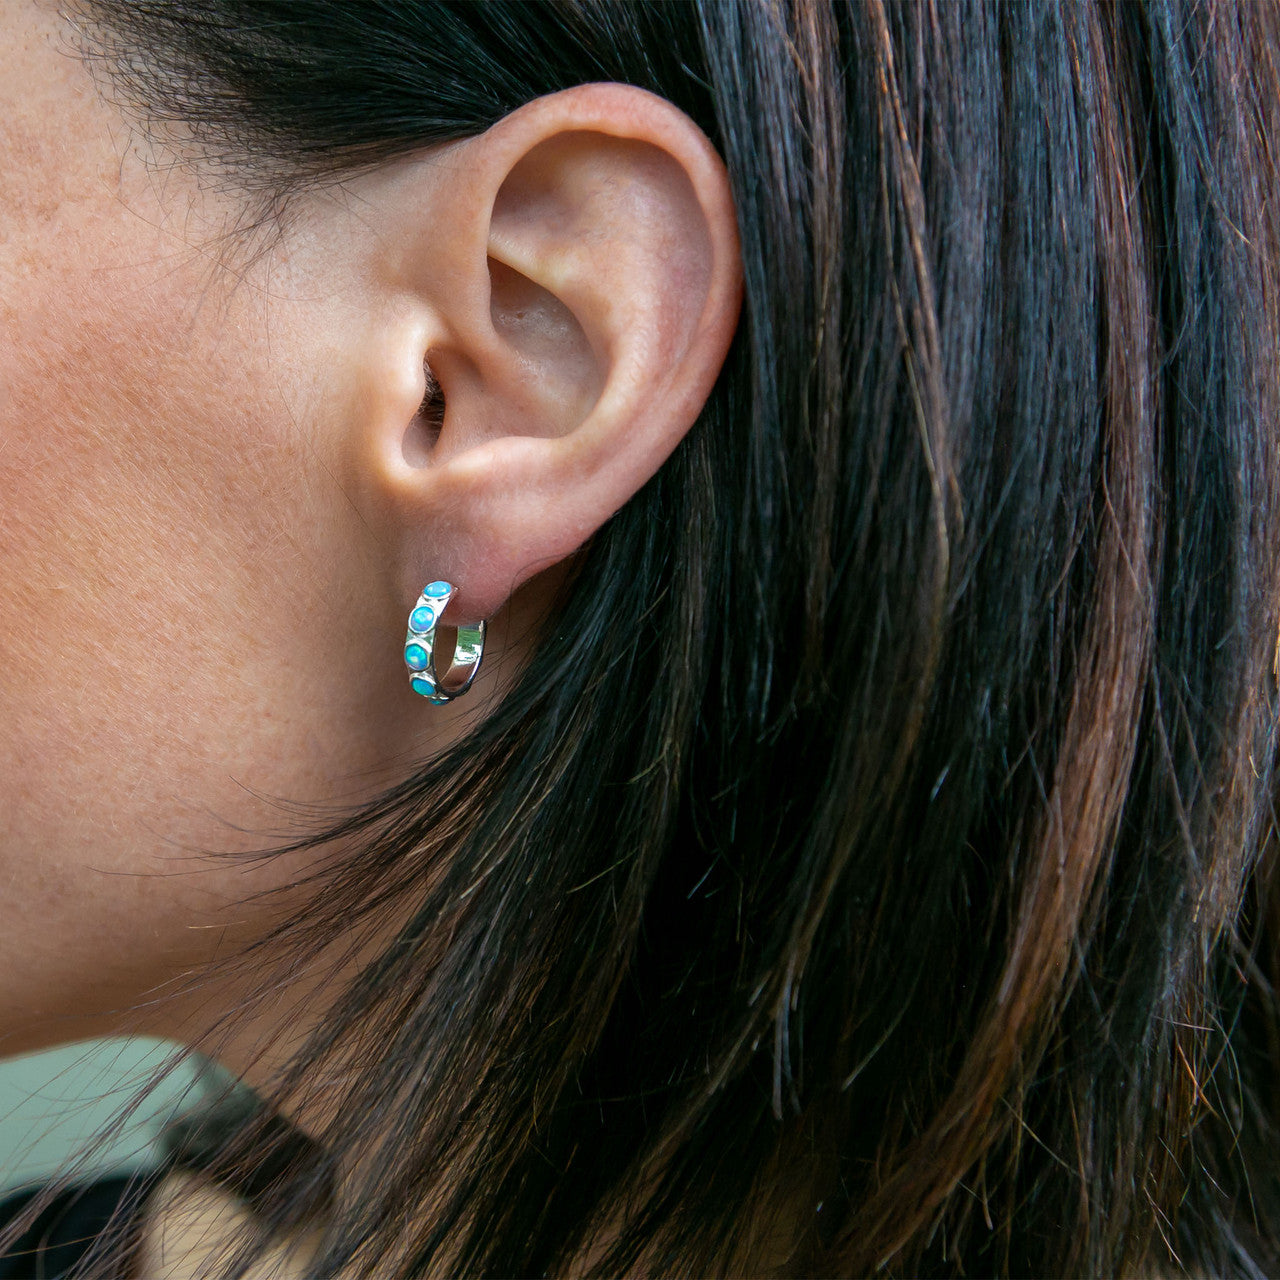 Blue Opal Gold Hoop Earrings - Roma